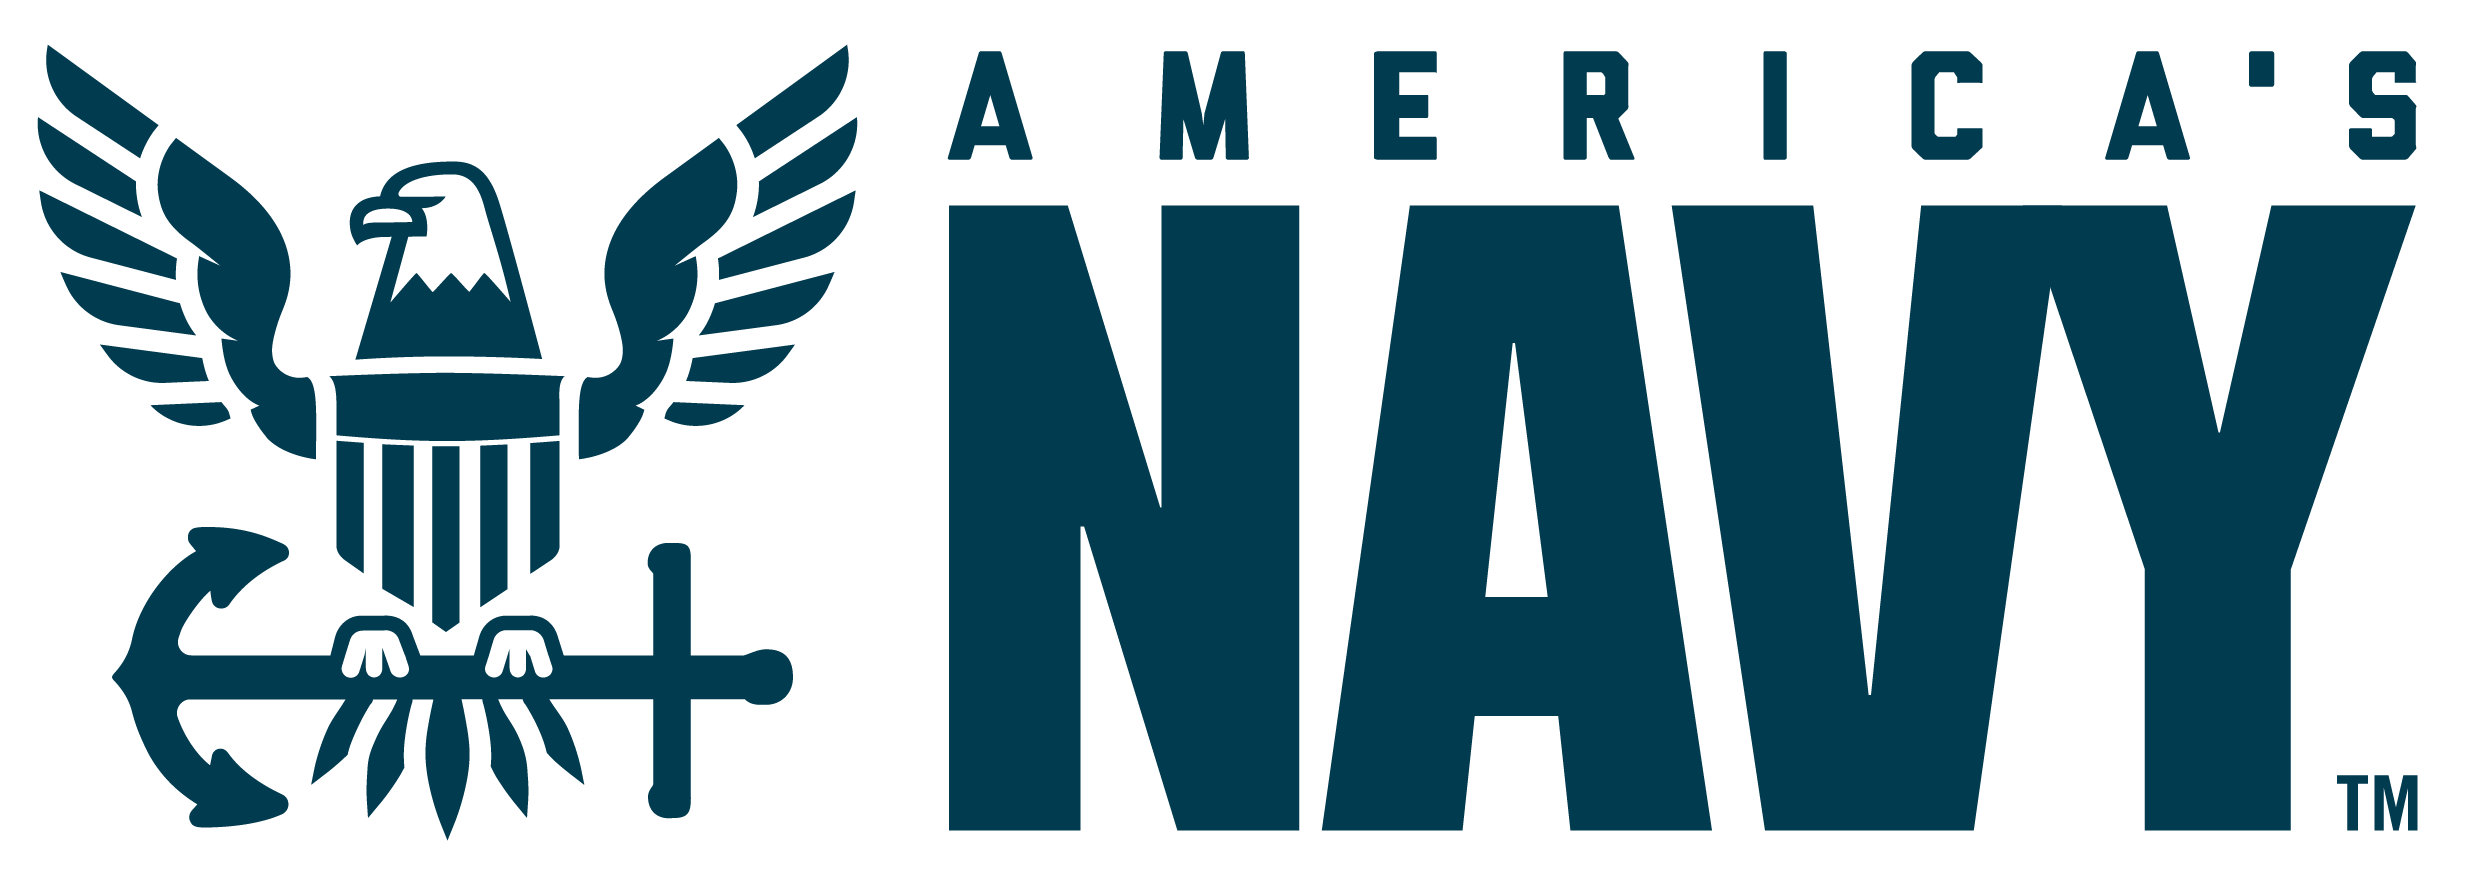 Navy Trademark